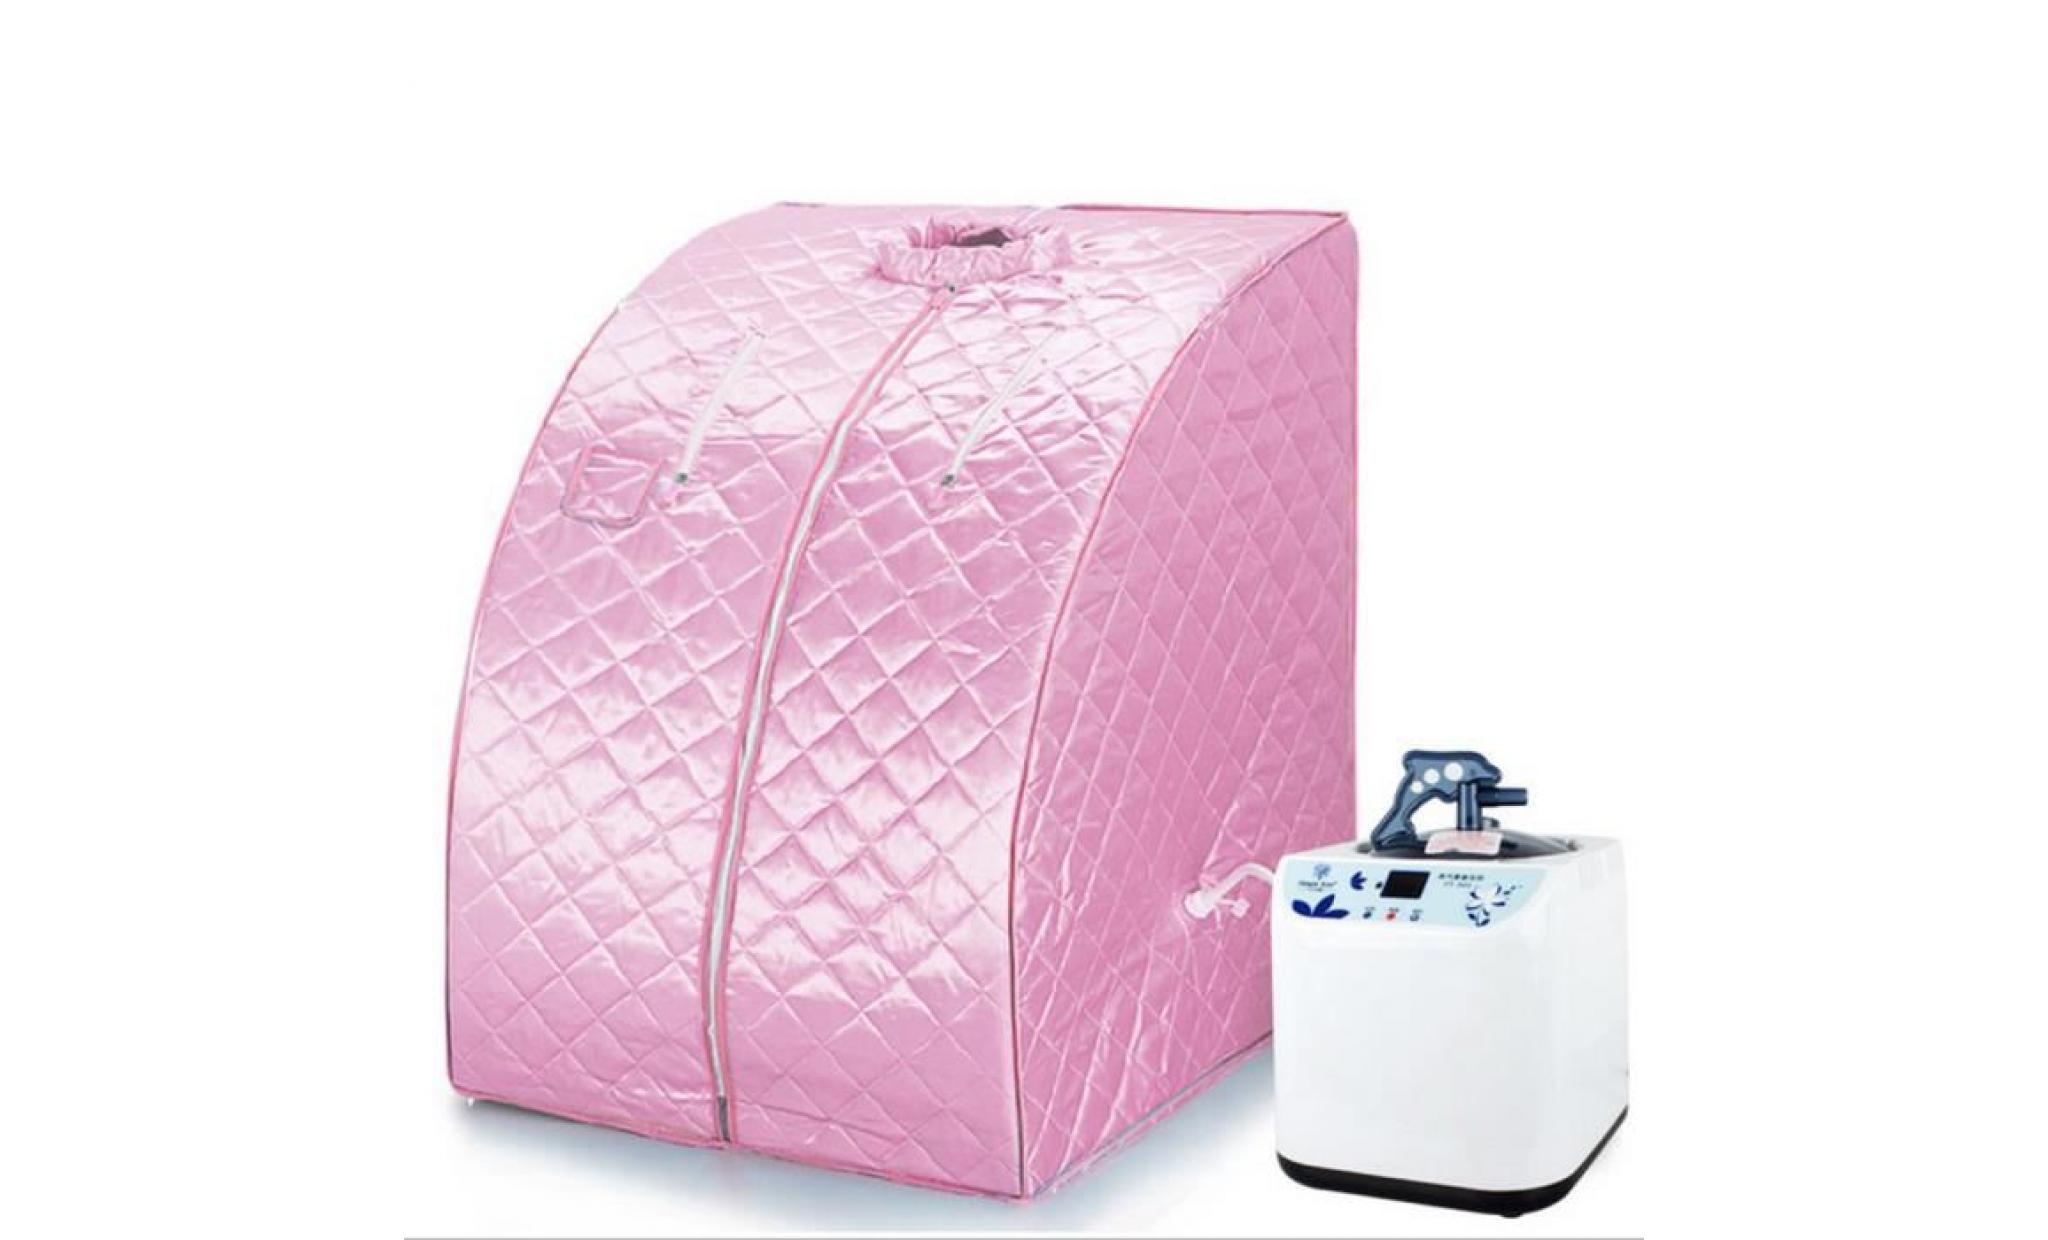 sauna 1200w boîte de bain rose spa à l'intererieur type de régulation de température à distance pas cher